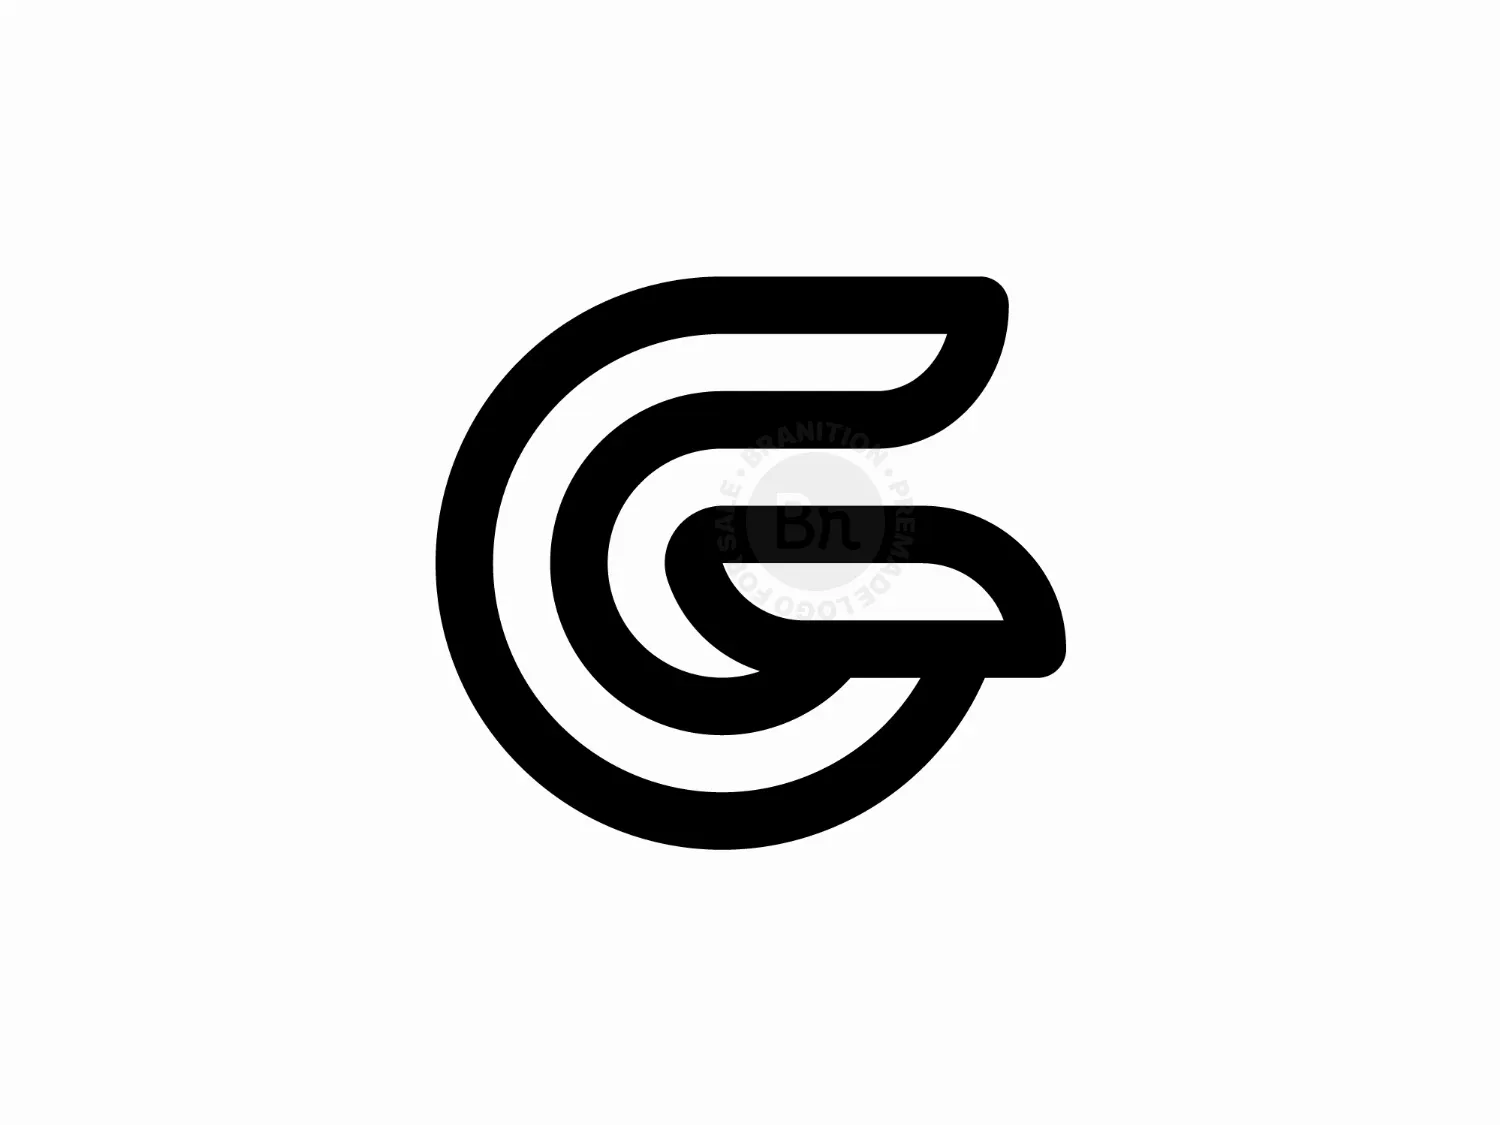 Premium Vector | Initial letter cg gc logo design vector illustration